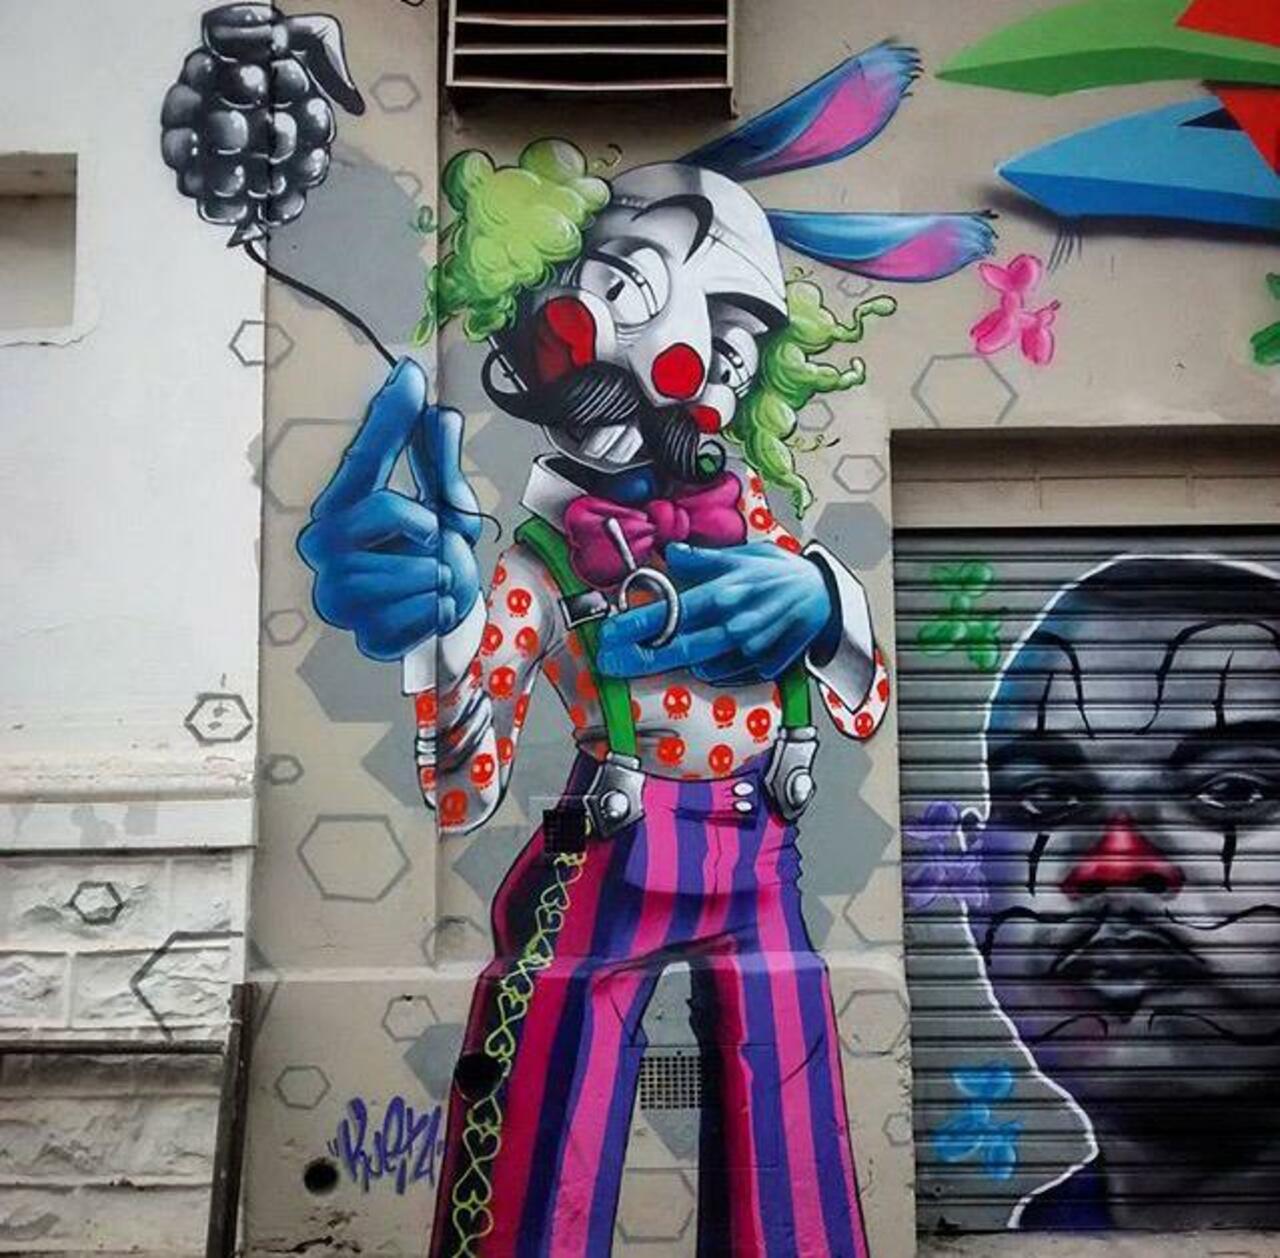 New Street Art by Karen Kueia 

#art #graffiti #mural #streetart http://t.co/gqNtQaEij8